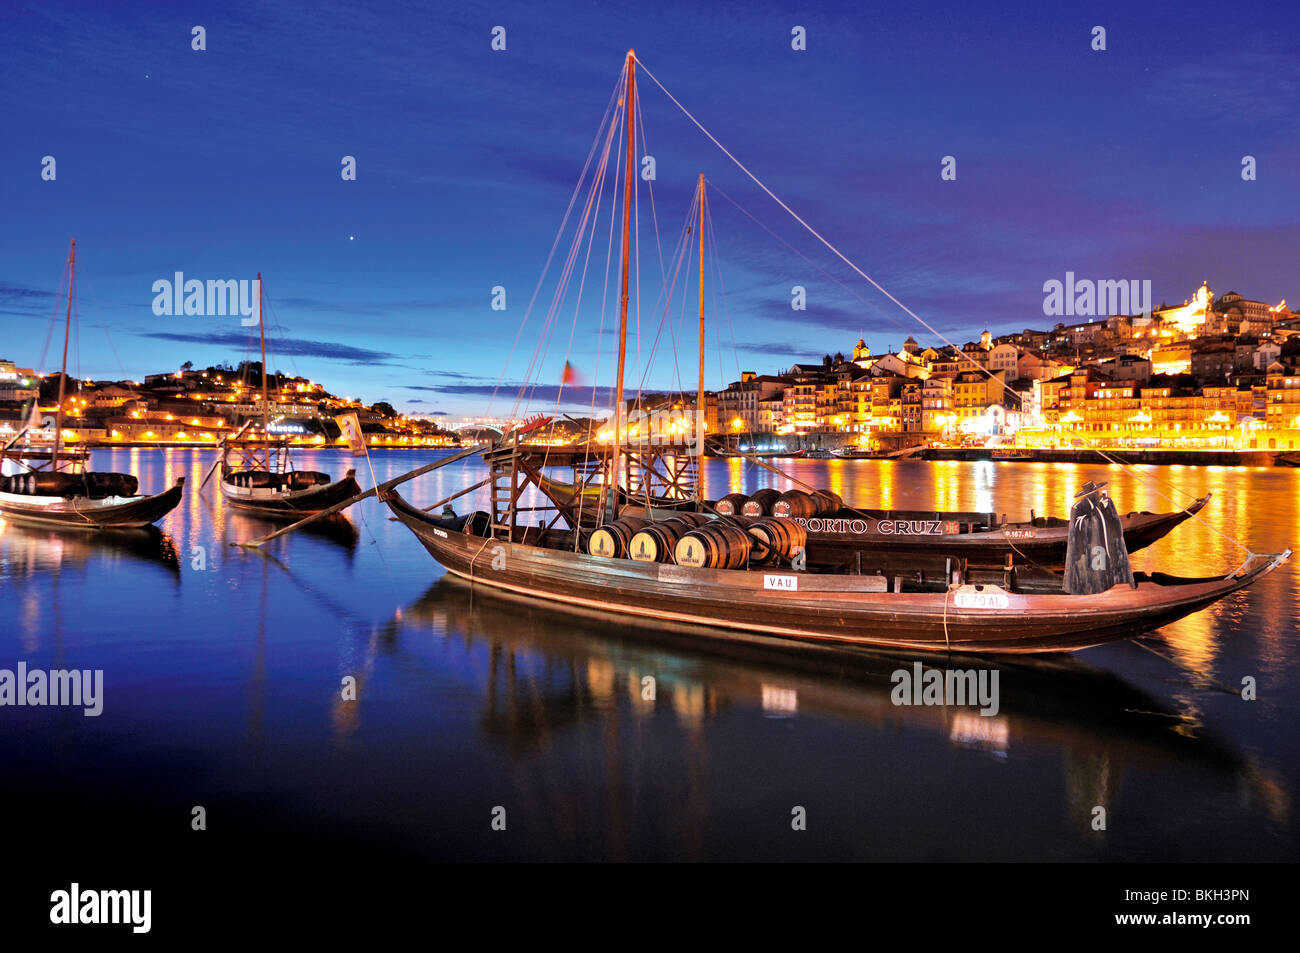 Portugal, Porto: Night view of the port wine ships at Vila Nova de Gaia at river Douro Stock Photo